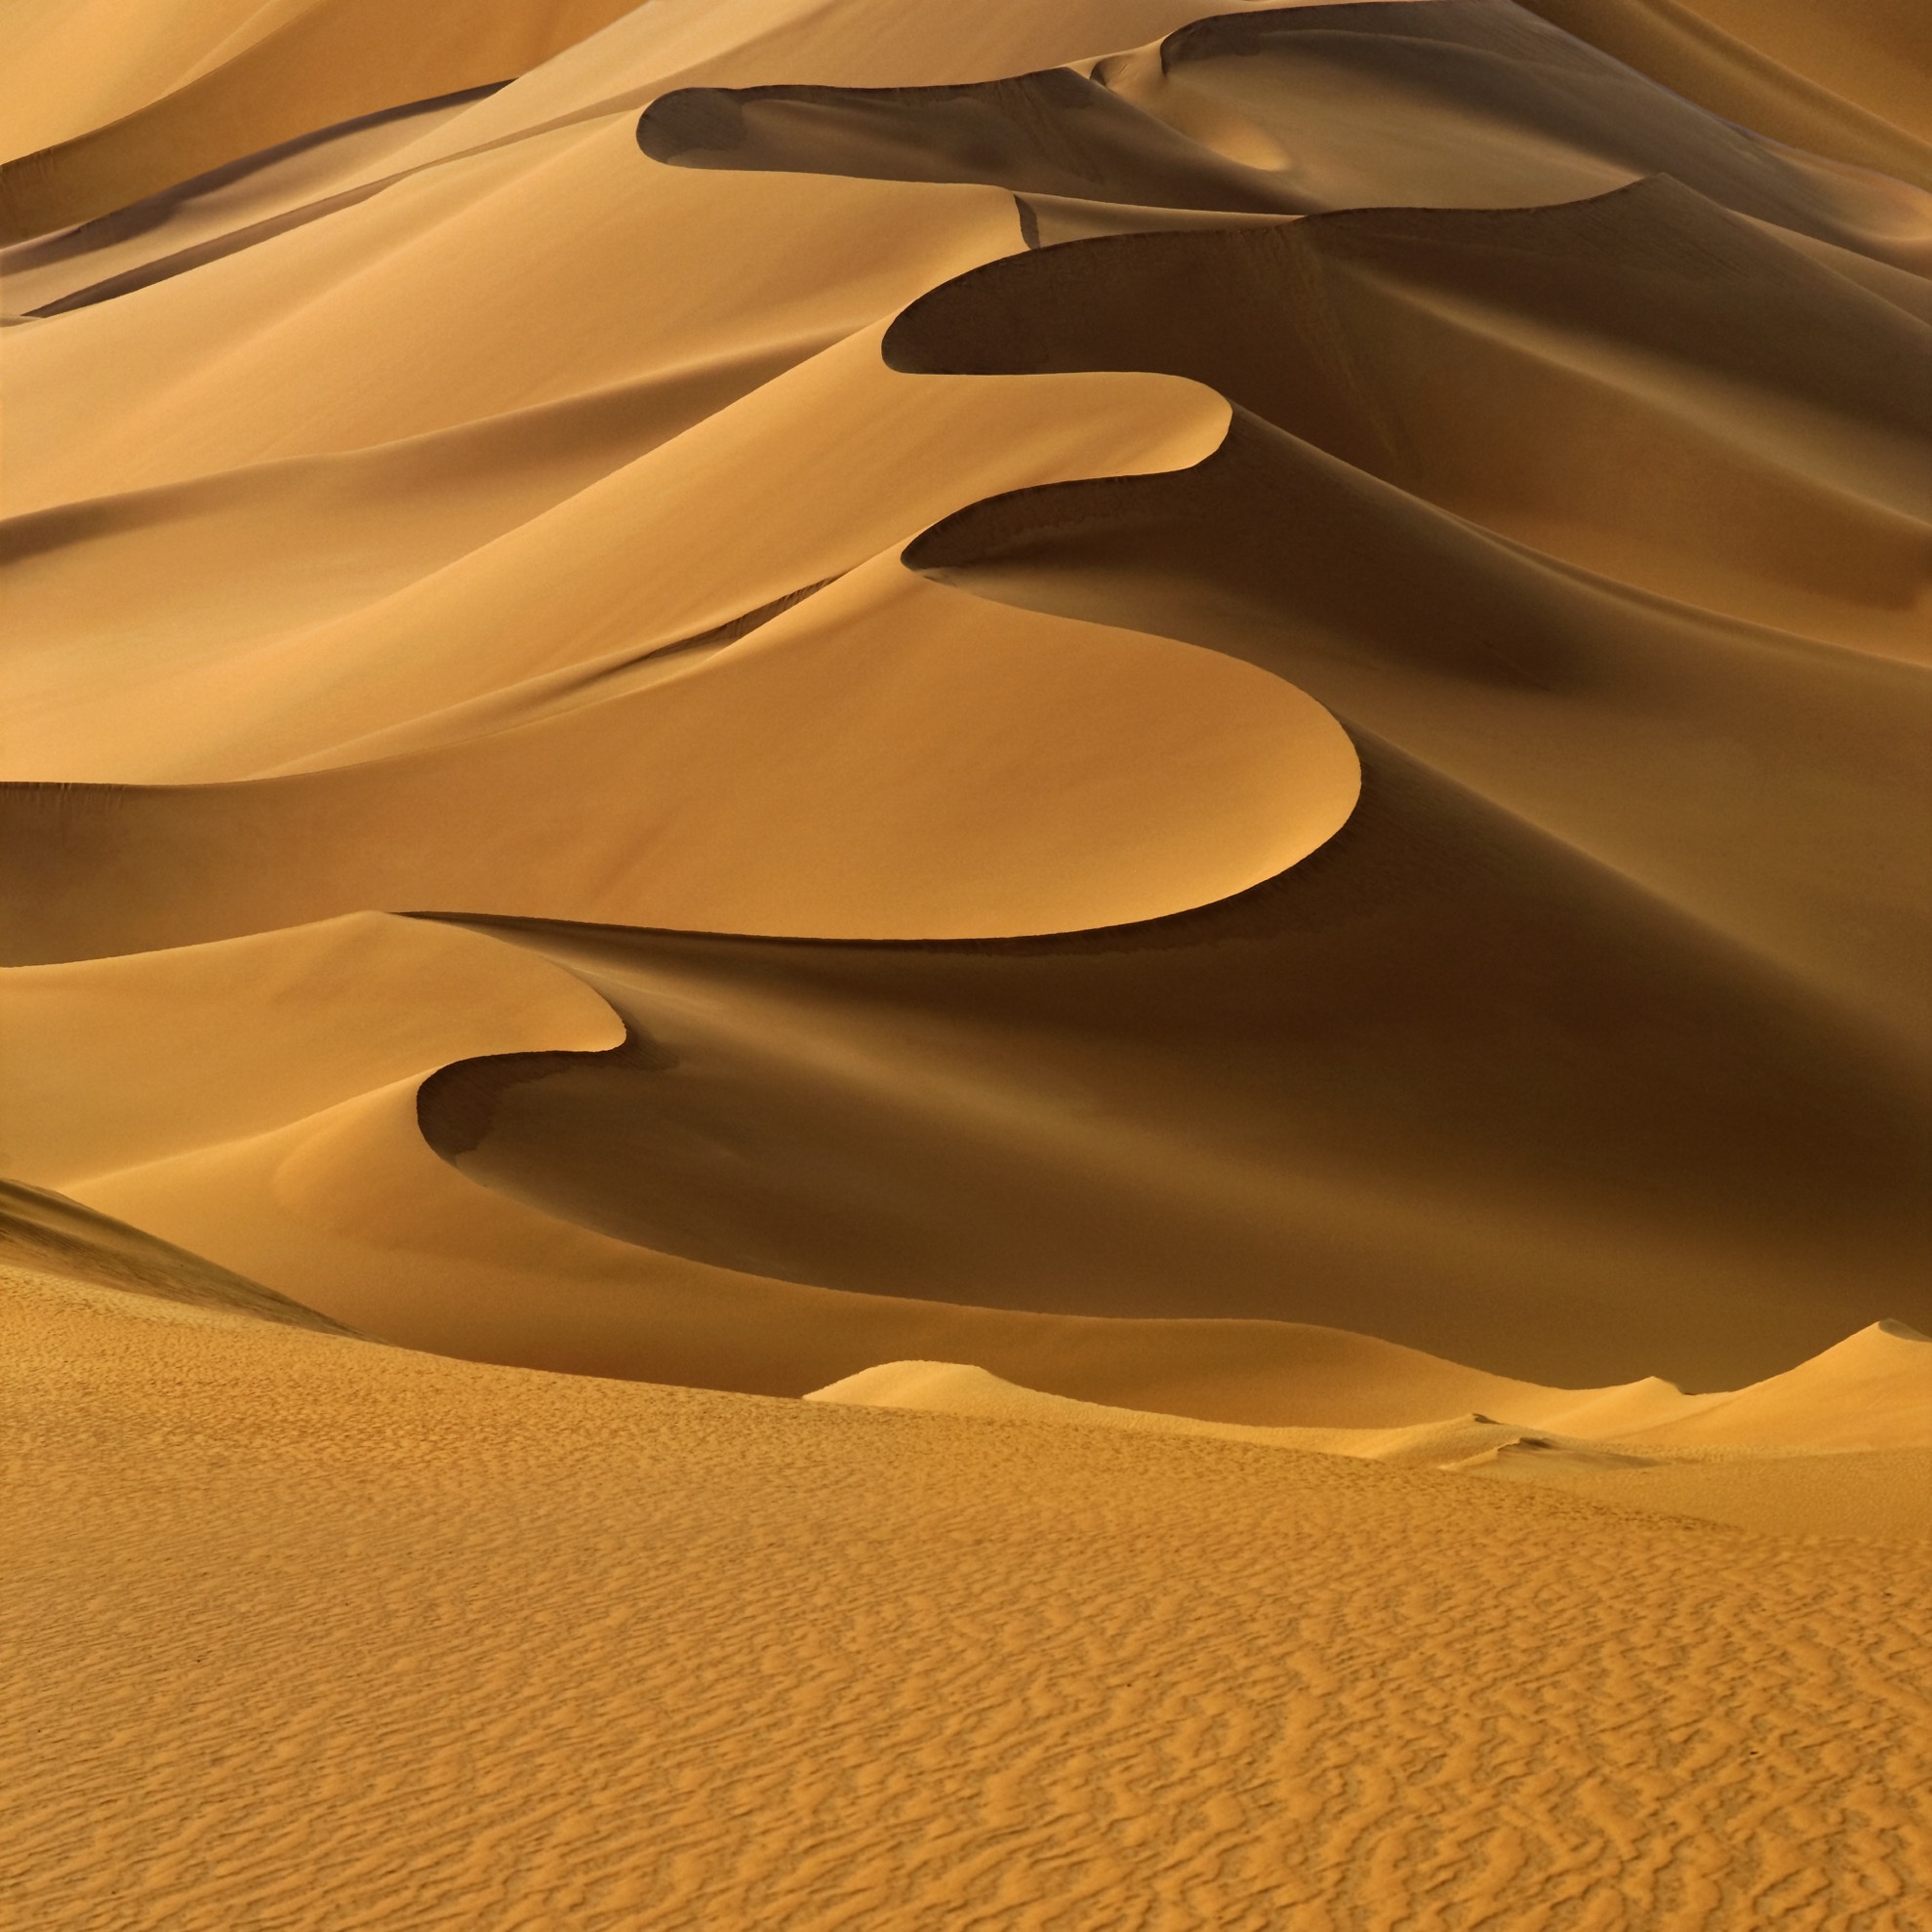 Cómo visitar el desierto del Sahara - 43